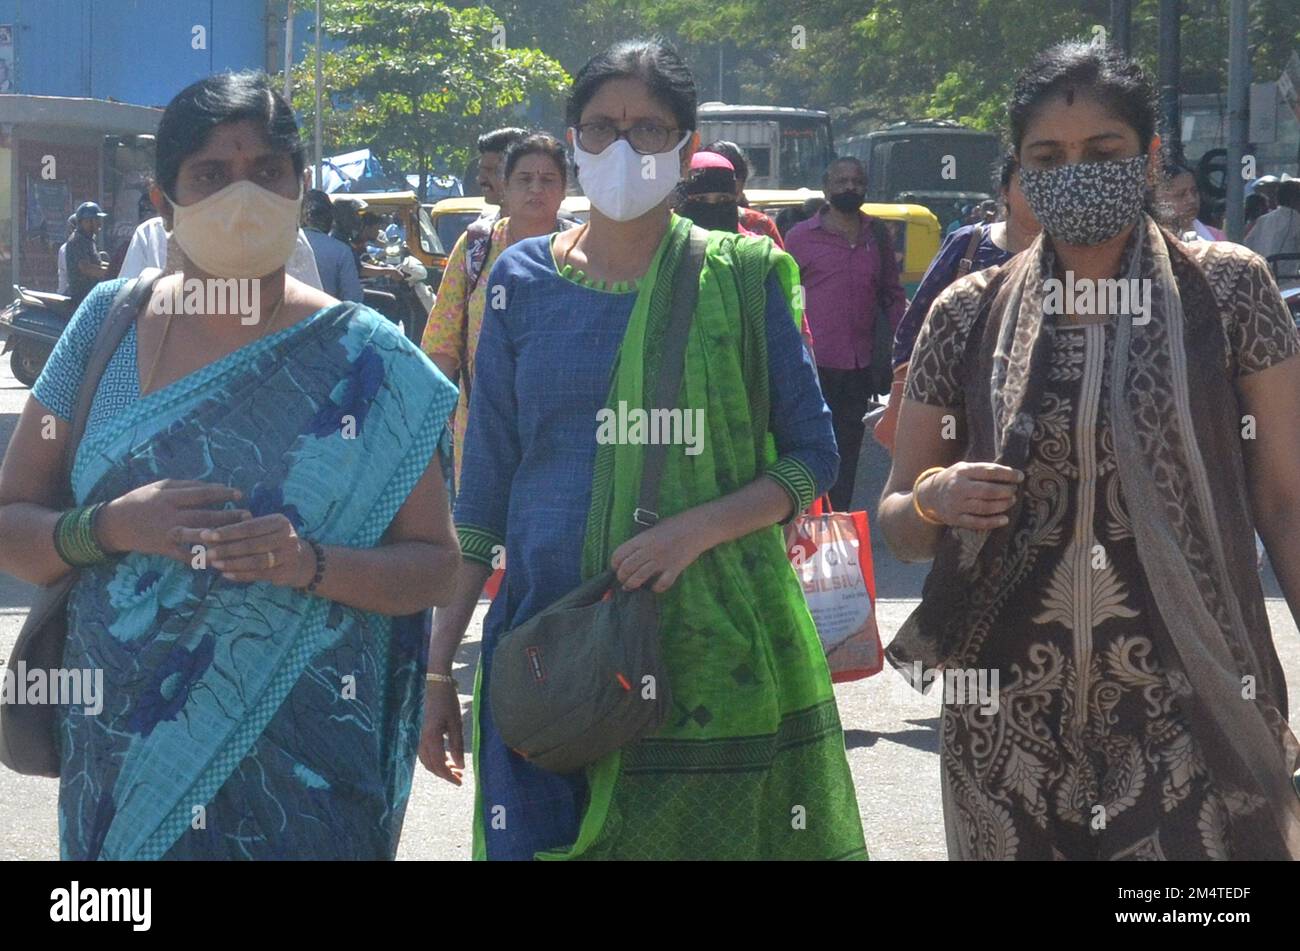 (221223) -- BANGALORE, 23 dicembre 2022 (Xinhua) -- le persone che indossano maschere protettive come misura precauzionale contro la diffusione della nuova variante di COVID-19 sono viste su una strada a Bangalore, India, 22 dicembre 2022. (Str/Xinhua) Foto Stock